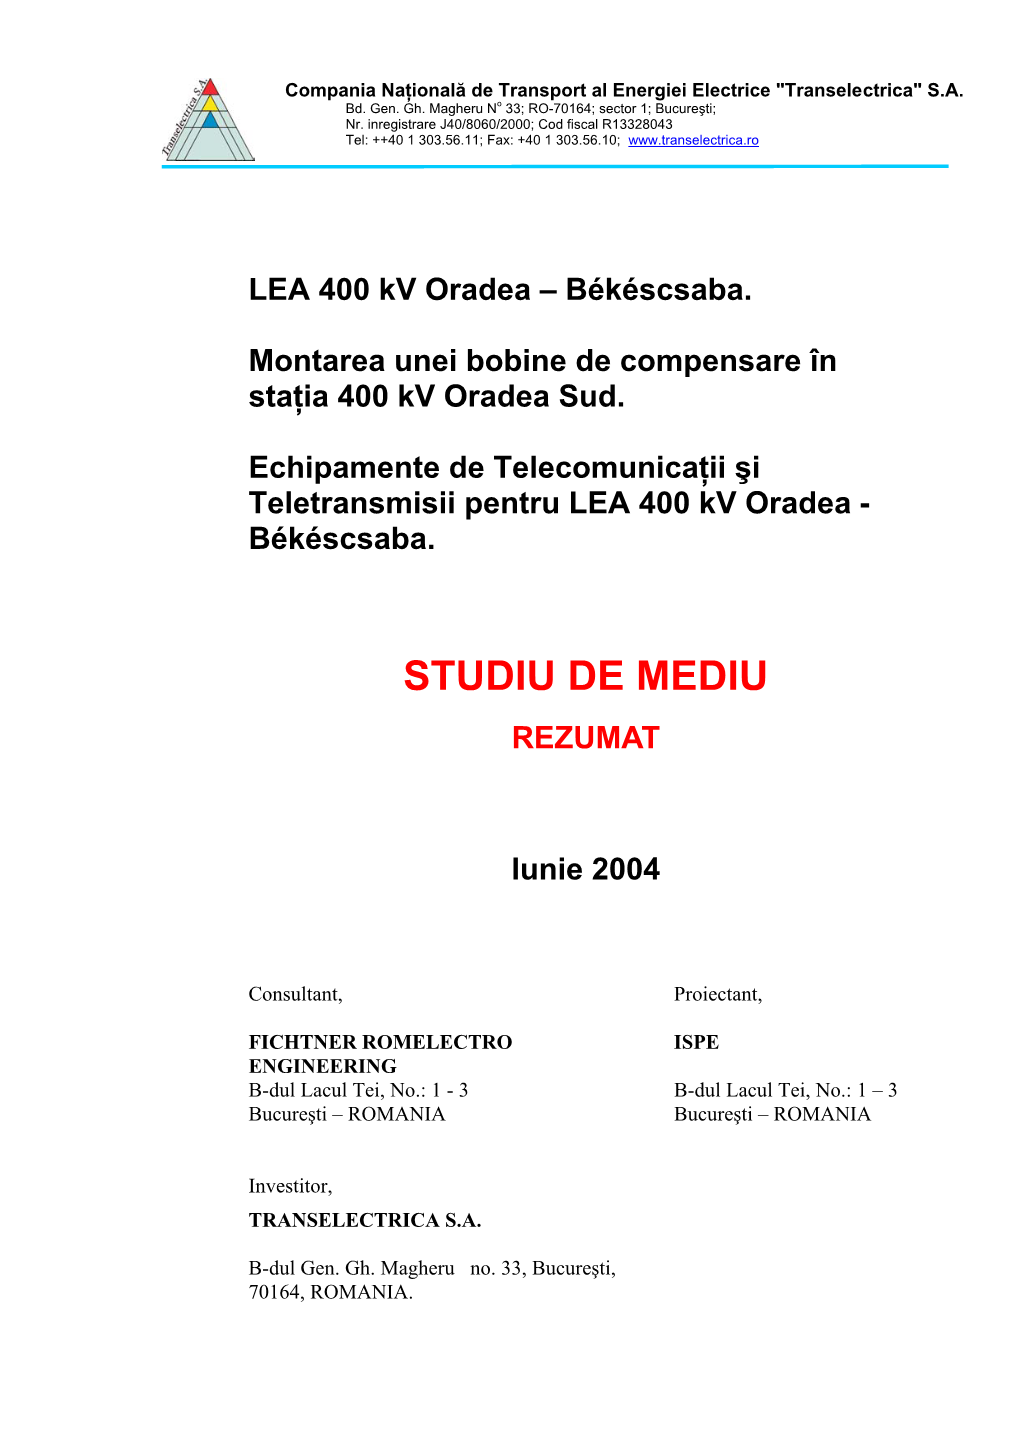 LEA 400 Kv Oradea – Békéscsaba